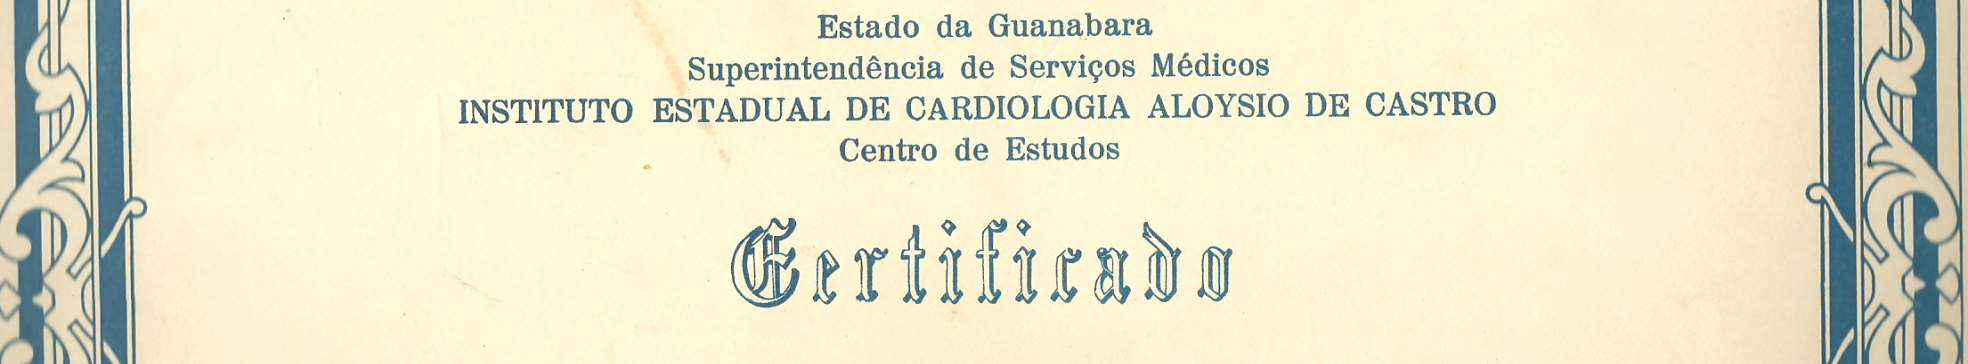 1971:Certificado -